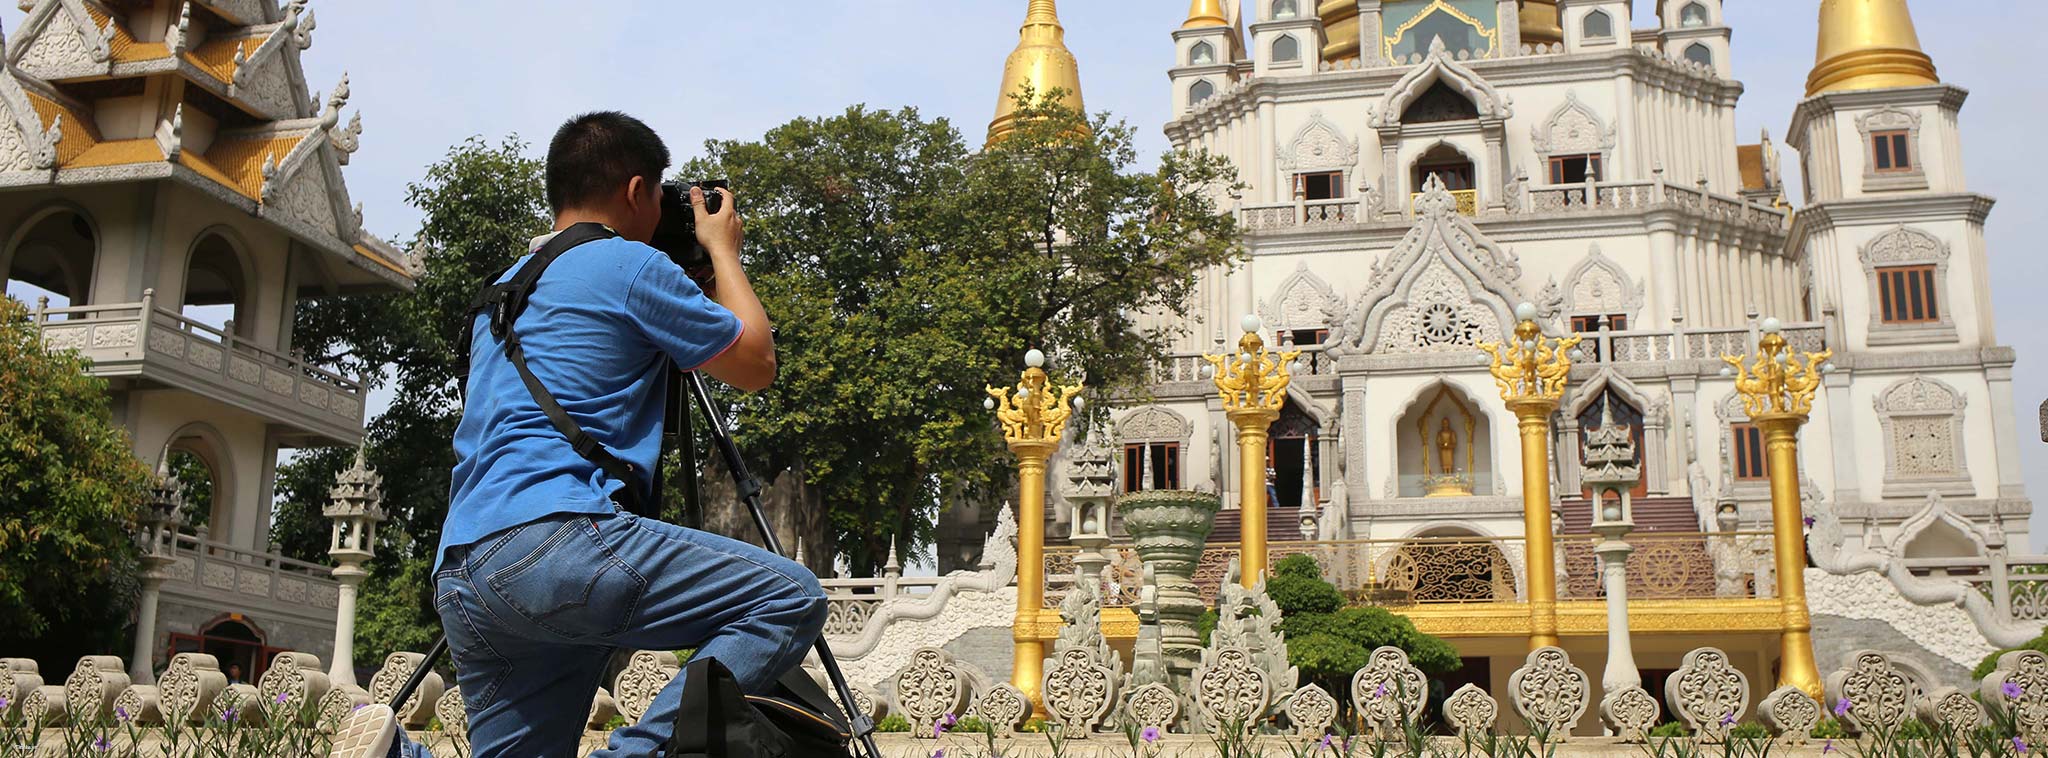 Nội dung buổi offline chụp ảnh cuối tuần- thứ Bảy 13/5 tại chùa Bửu Long (Sài gòn)